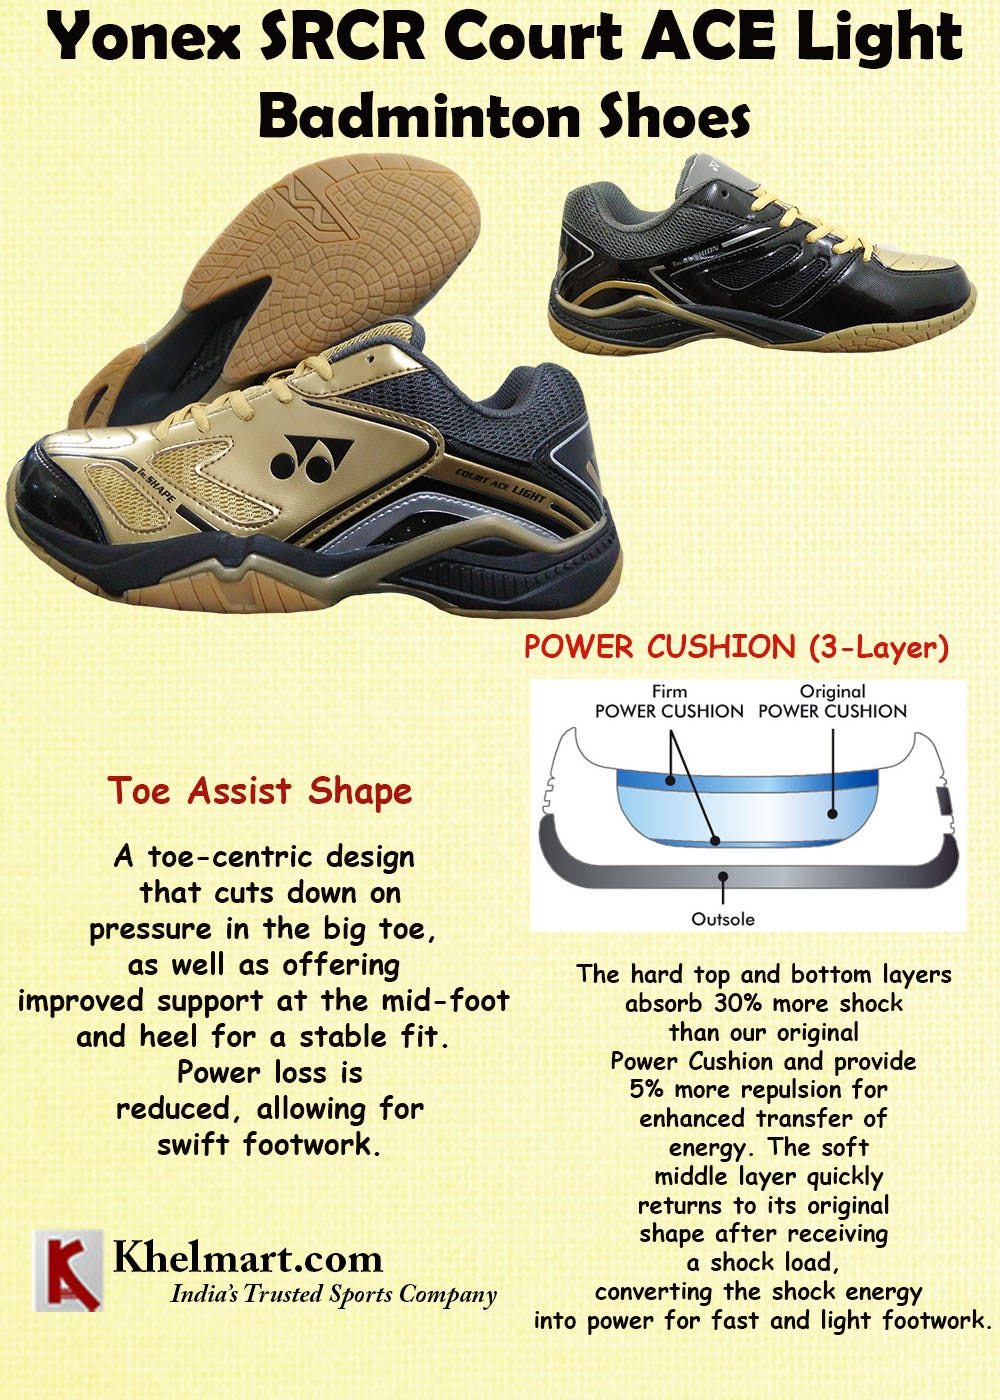 yonex court ace light badminton shoes